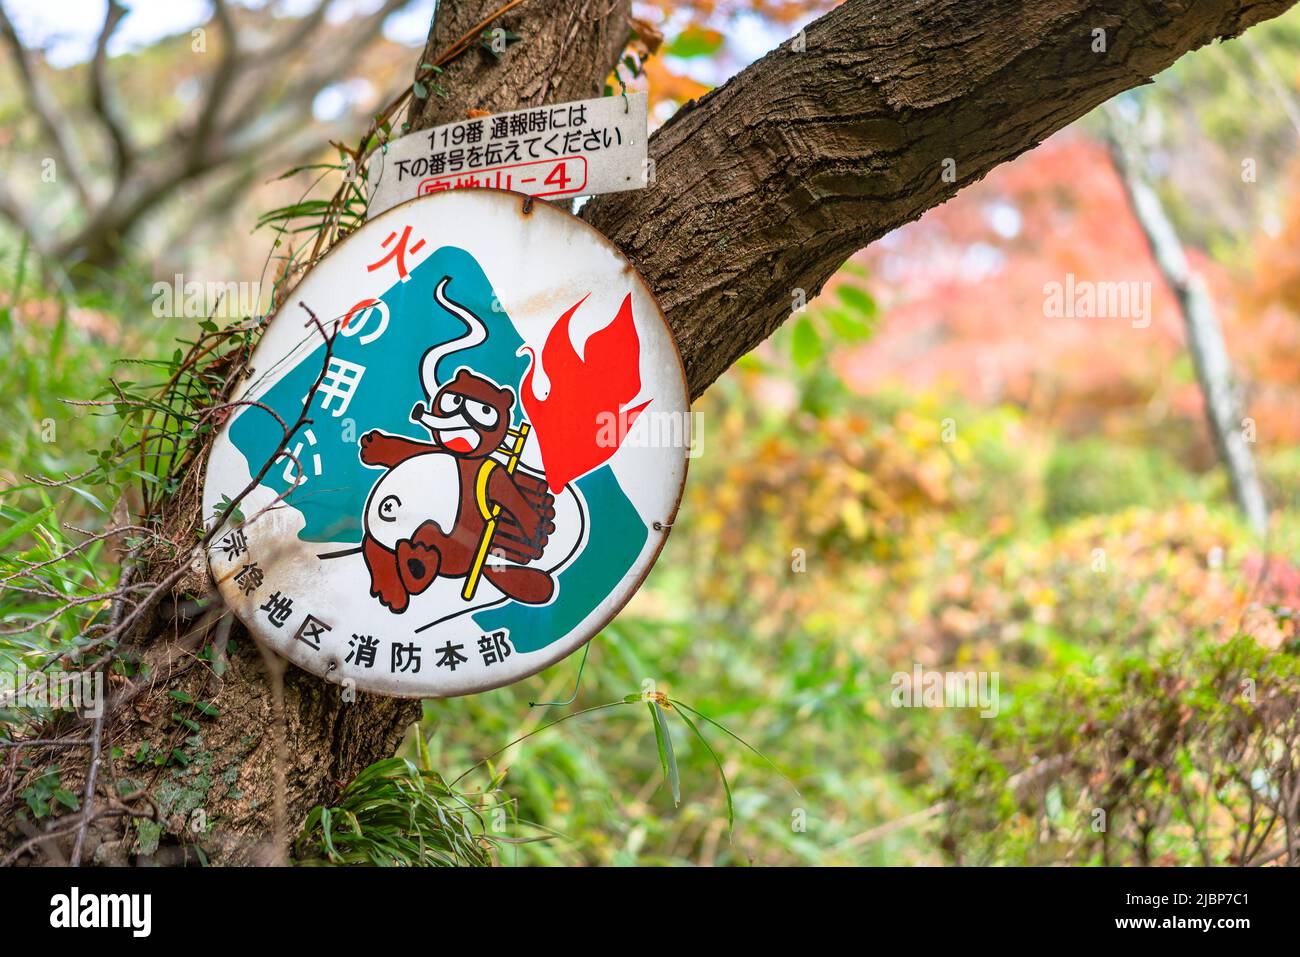 kyushu, japan - dezember 08 2021: Nahaufnahme eines rostigen Metallschildes, das mit einem tanuki-Waschbär-Hund aus dem japanischen Volksmärchen Kachi-kachi Yama pre illustriert ist Stockfoto